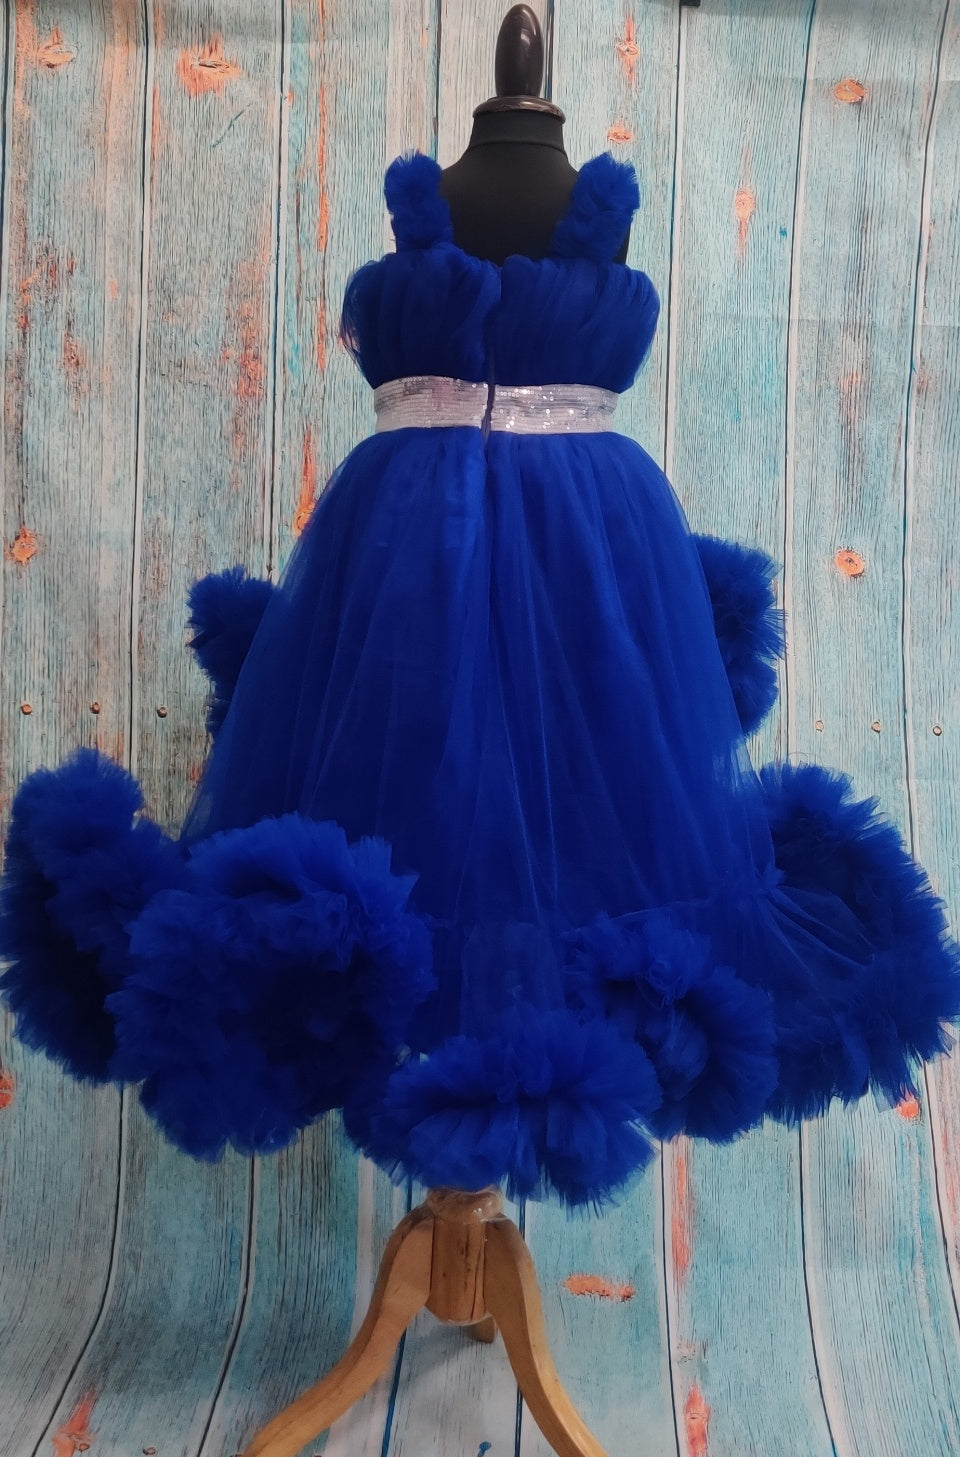 Blue Princess gown